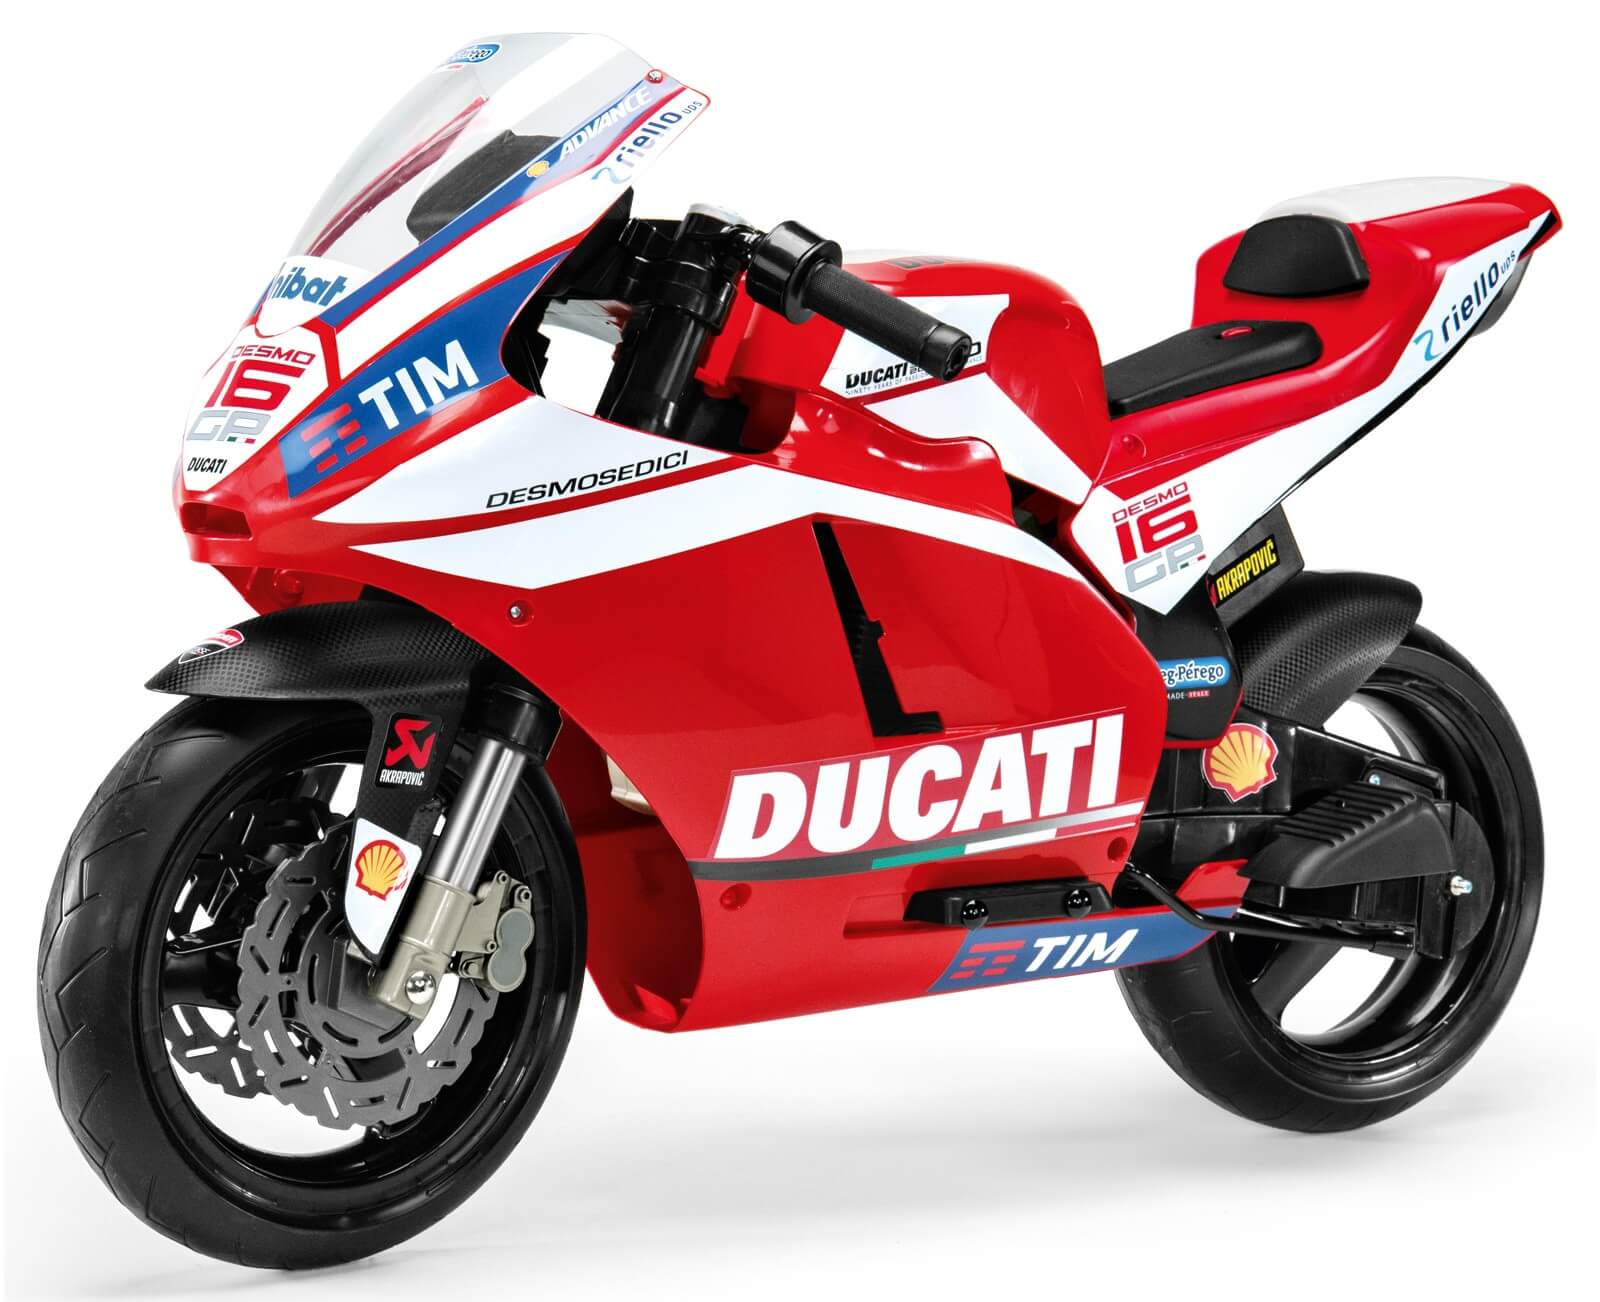 Preparados, listos ¡ya! Ésta es Ducati GP, la motocicleta eléctr